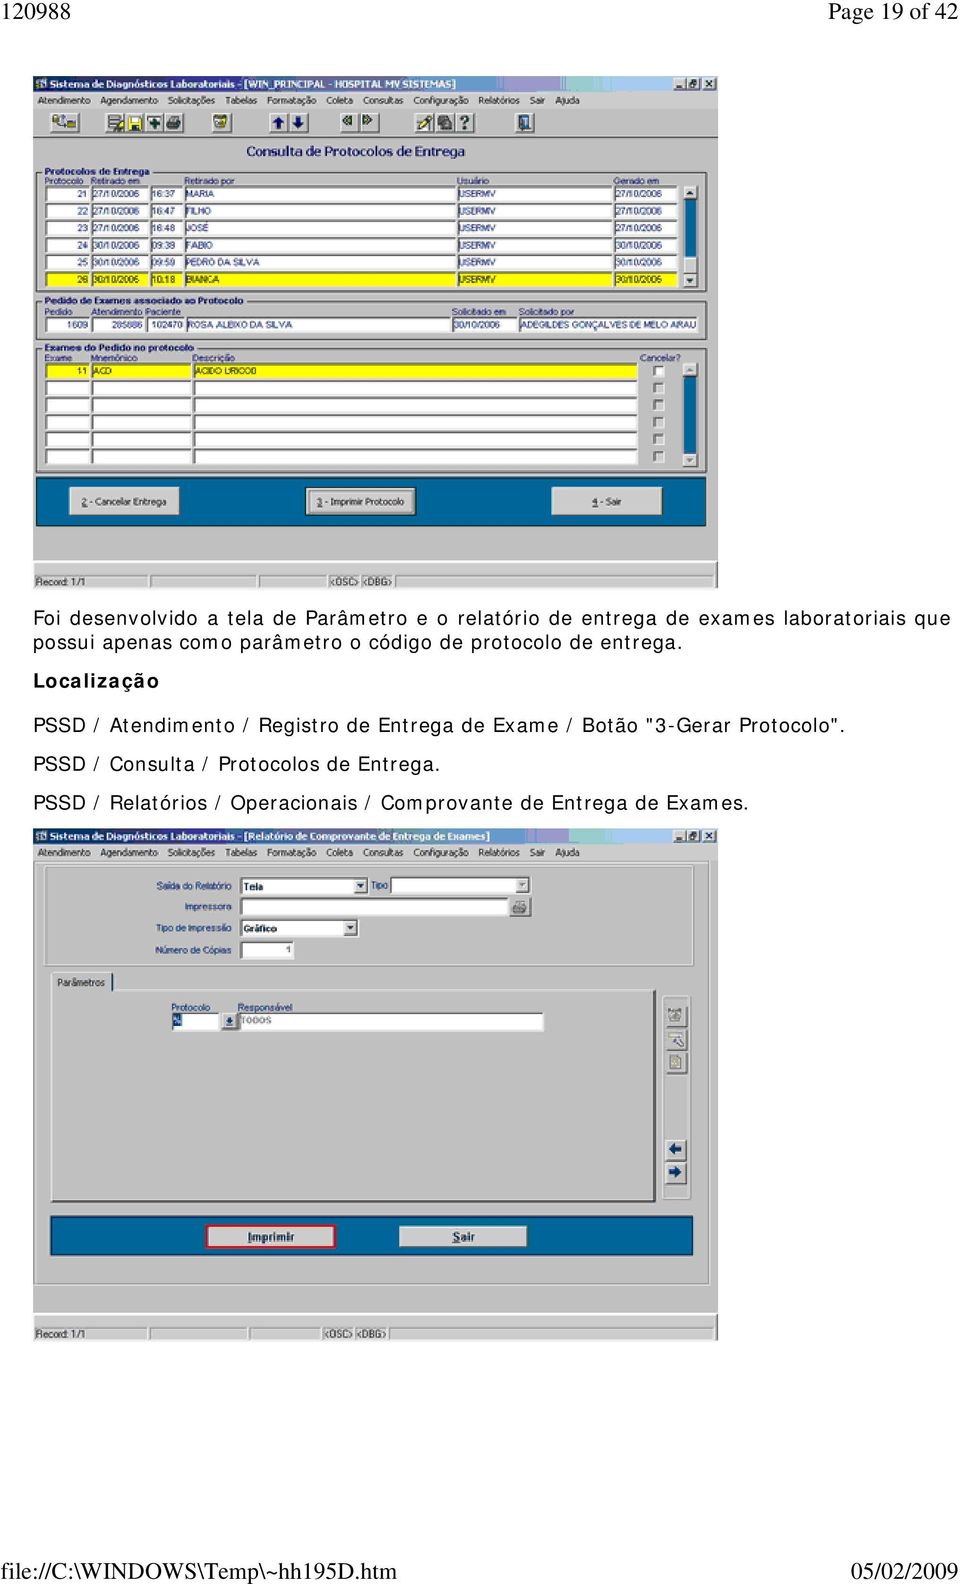 PSSD / Atendimento / Registro de Entrega de Exame / Botão "3-Gerar Protocolo".